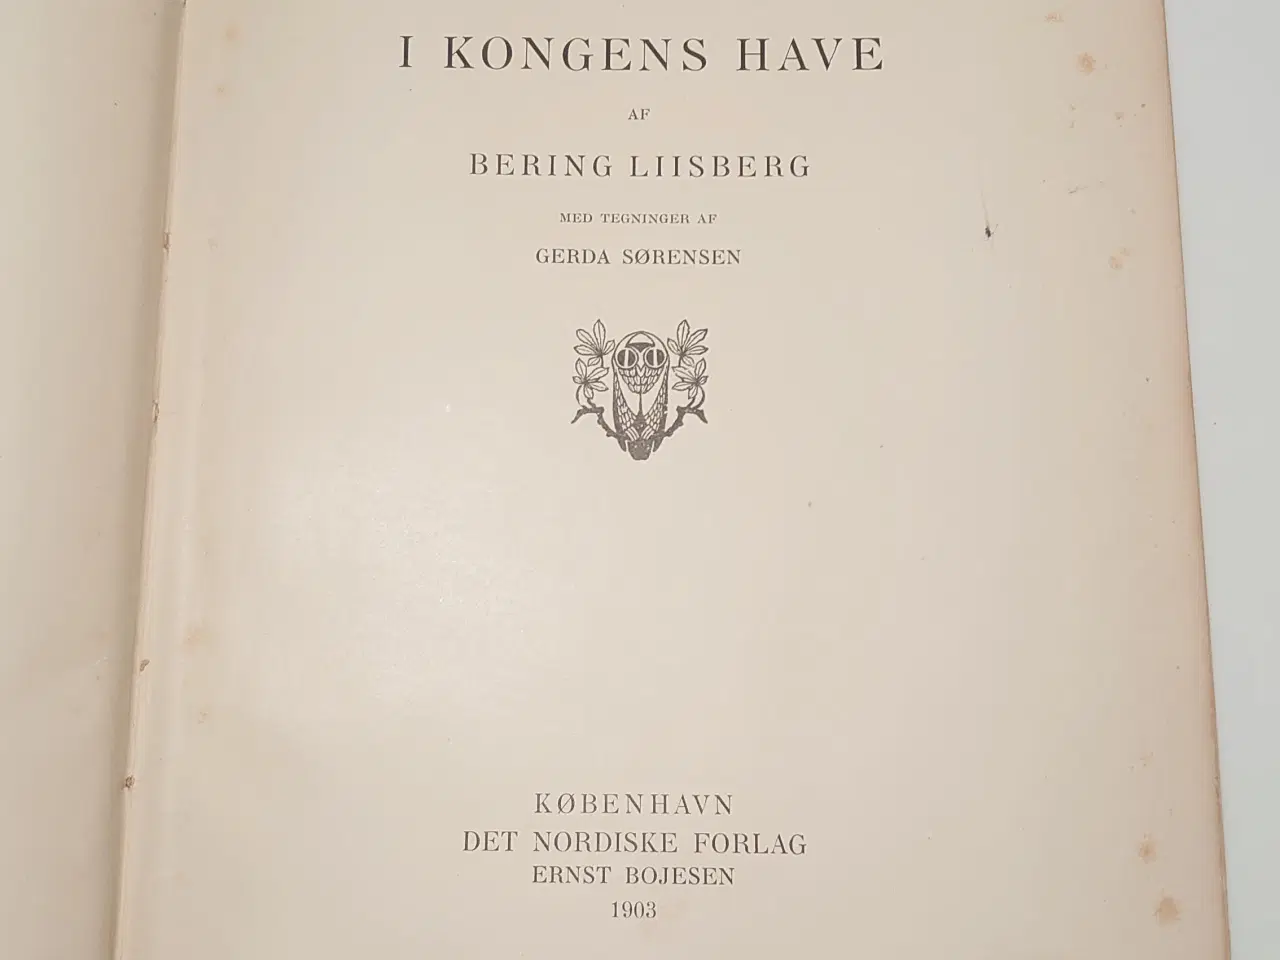 Billede 2 - Bering Liisberg: Eventyr i Kongens Have. År 1903